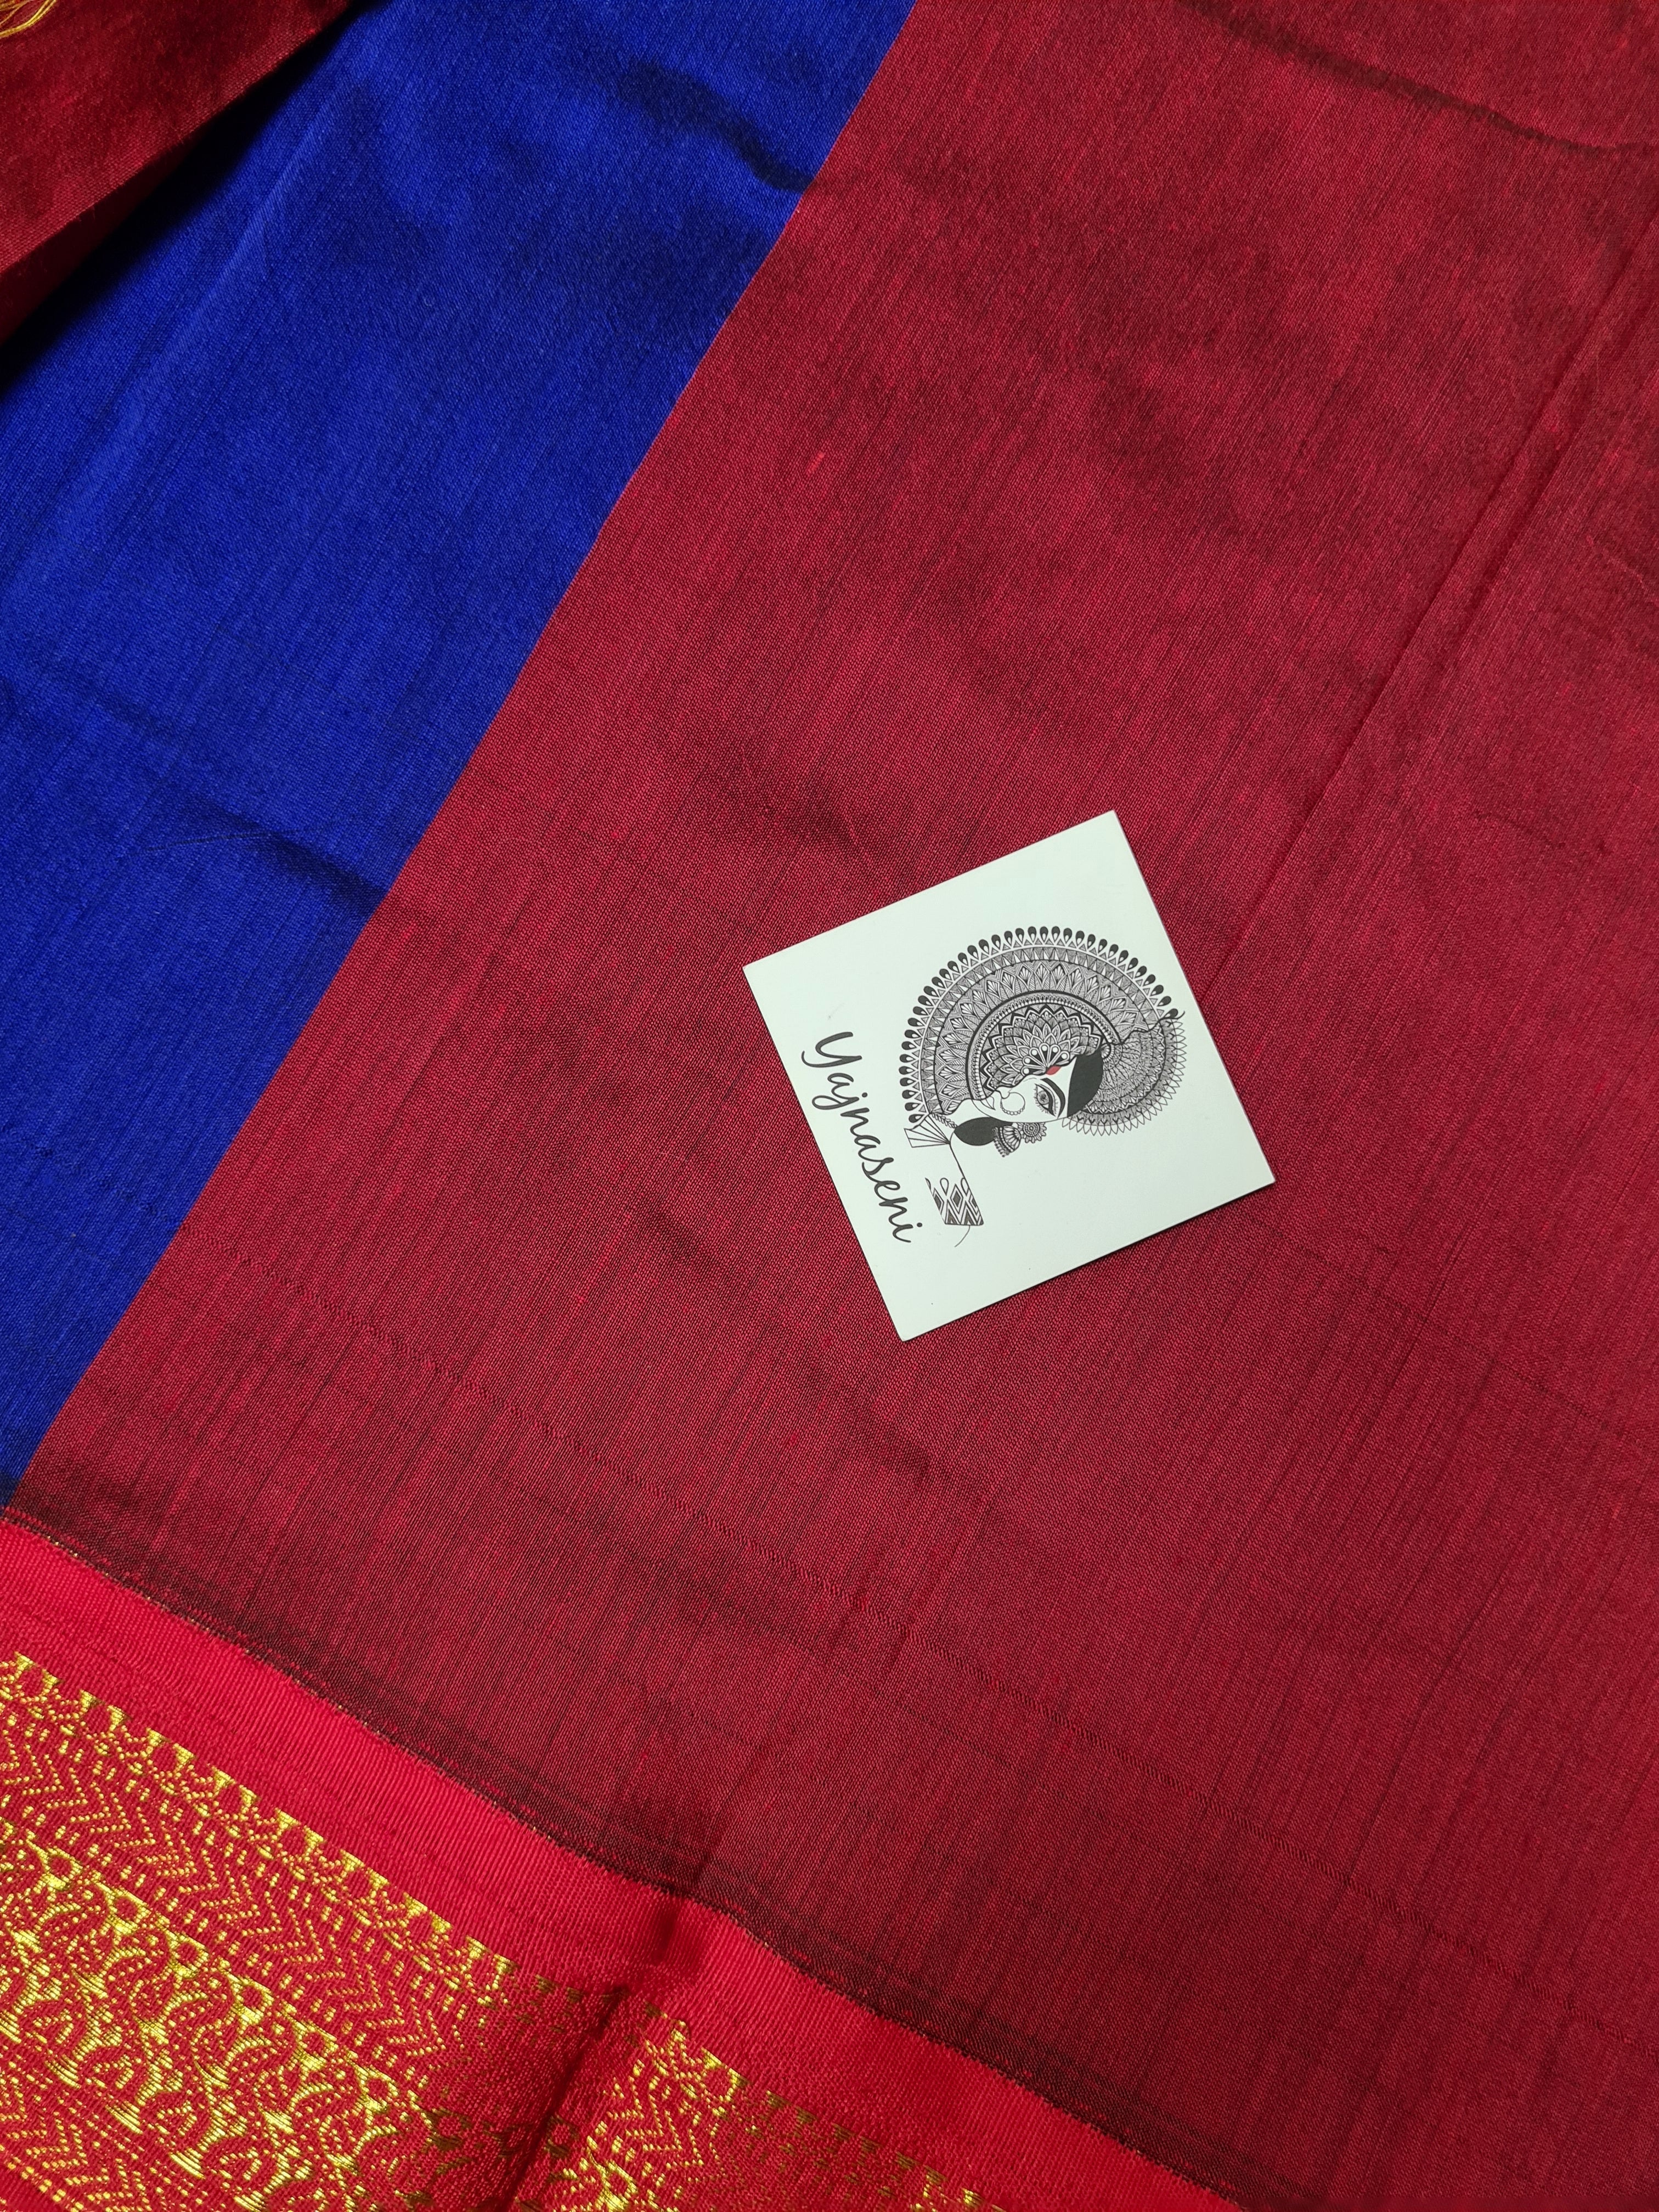 Kalyani Cotton Saree - Royal Blue with Red